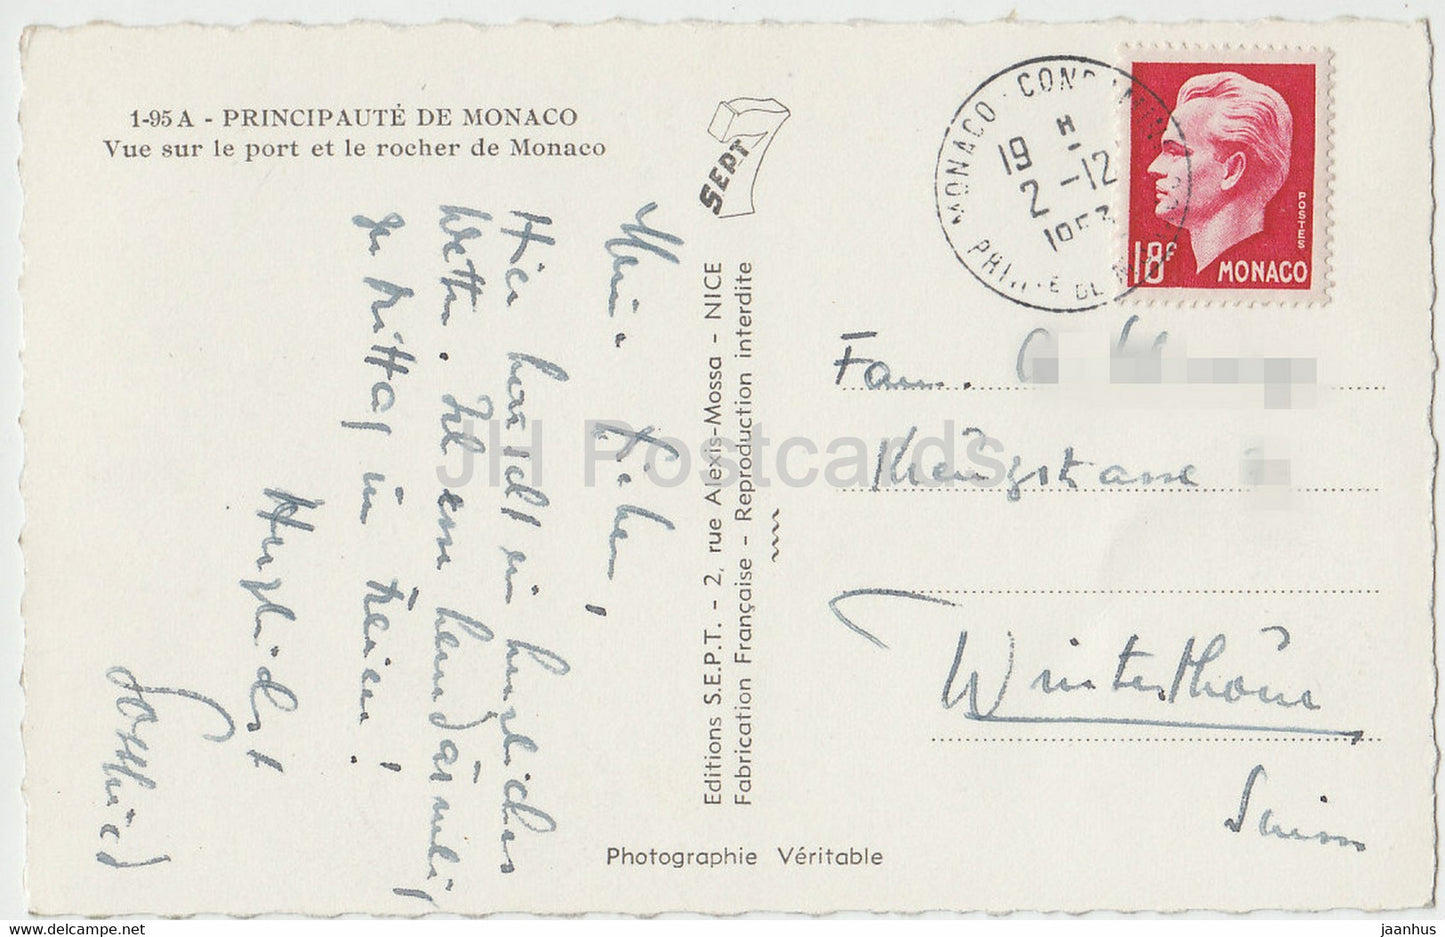 Vue sur le port et le rocher de Monaco - old postcard - 1953 - Monaco - used